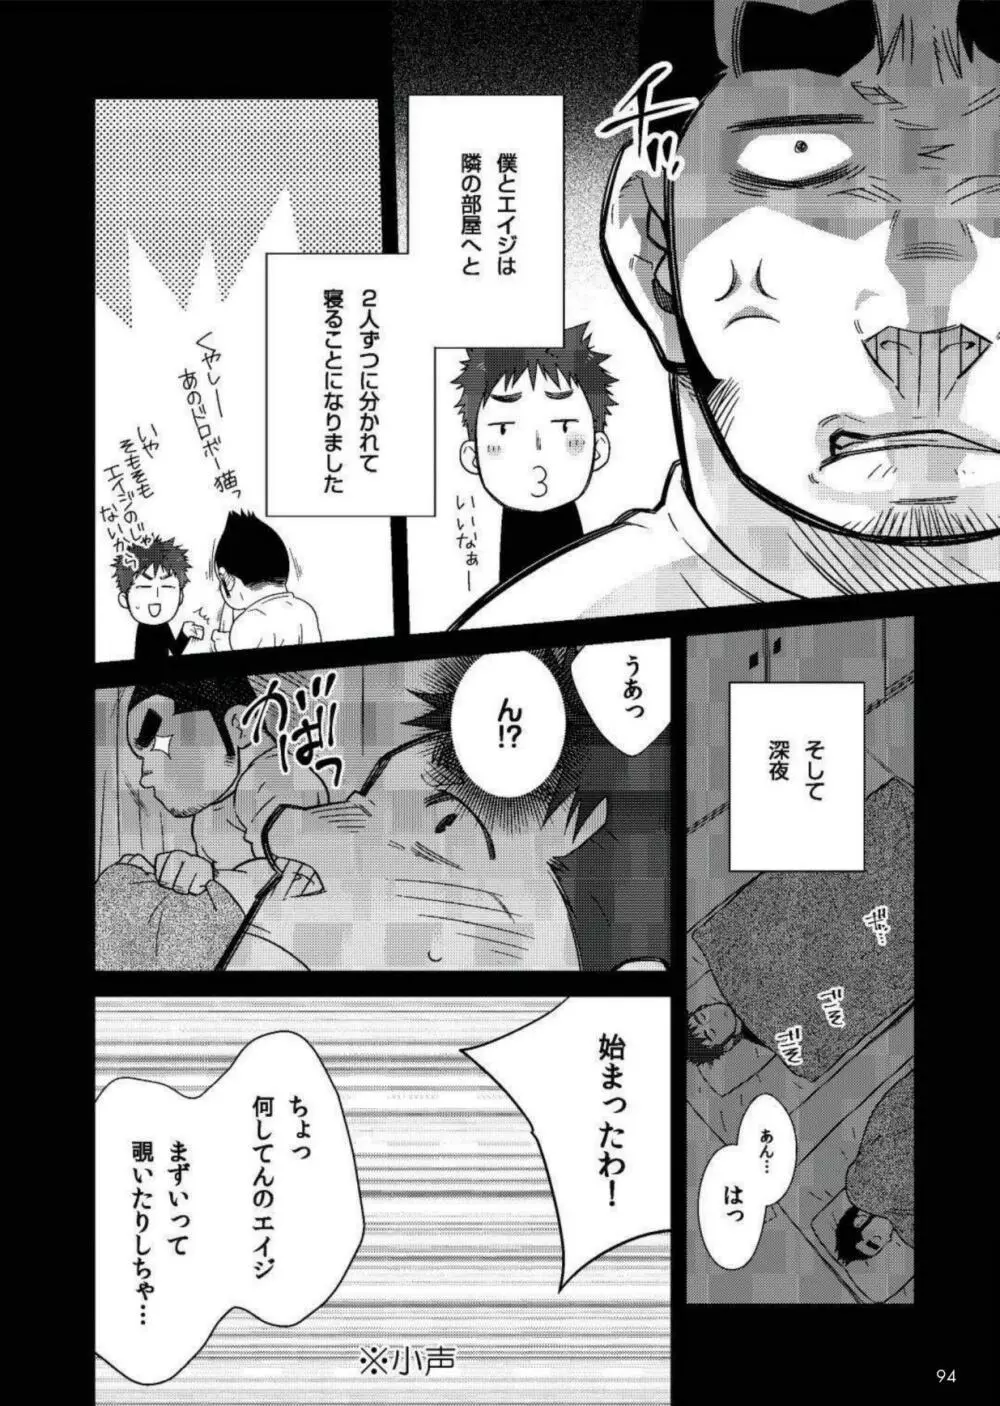 Terujirou - 晃次郎 - Badi Bʌ́di (バディ) 119 (Jan 2016) Page.4